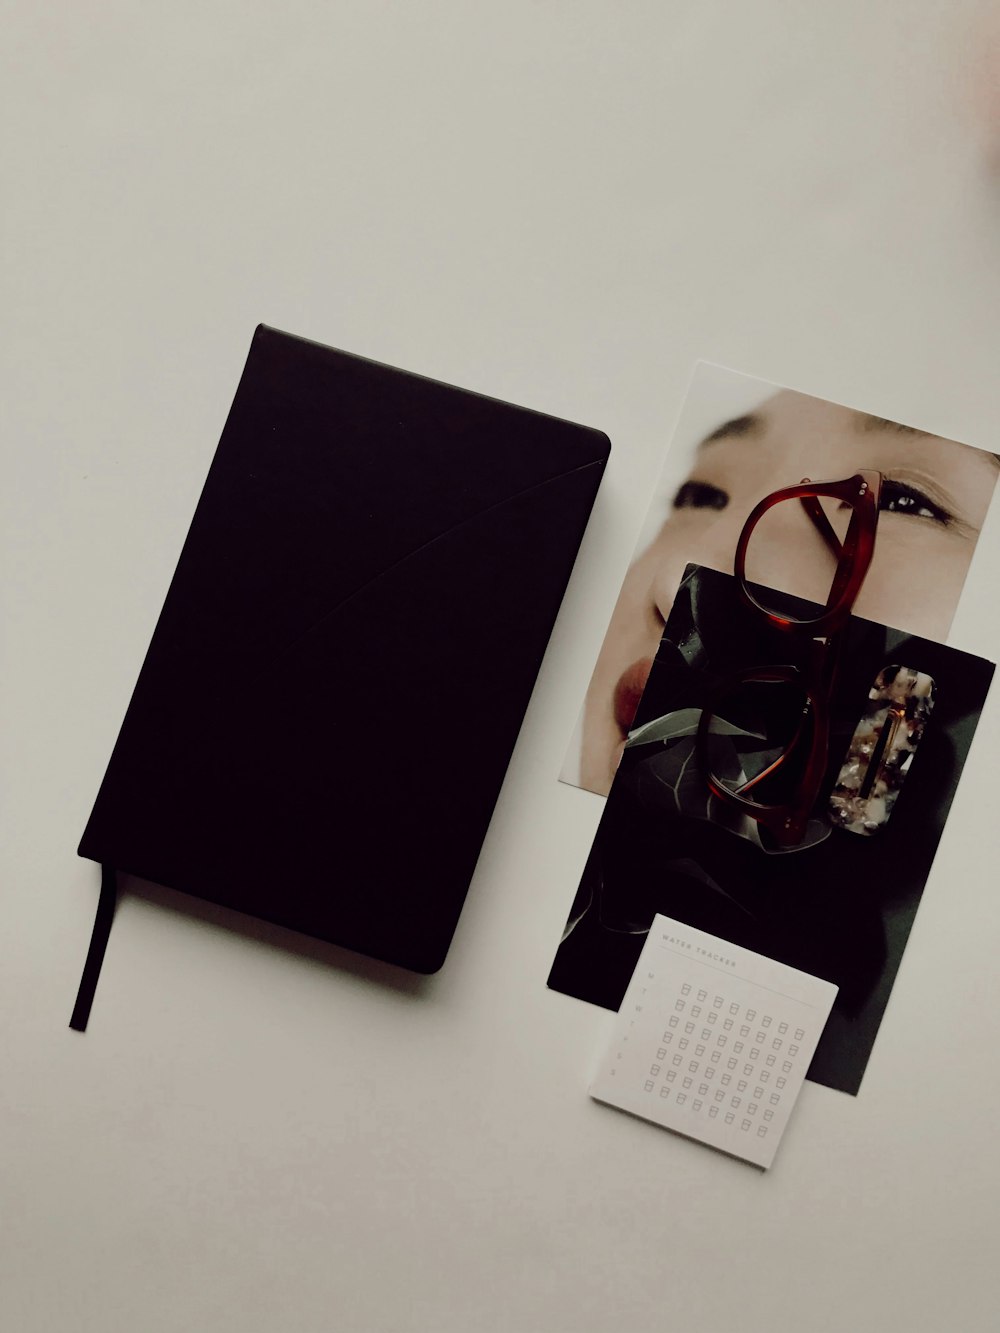 Schwarzes Buch neben braunen Brillen und Fotos